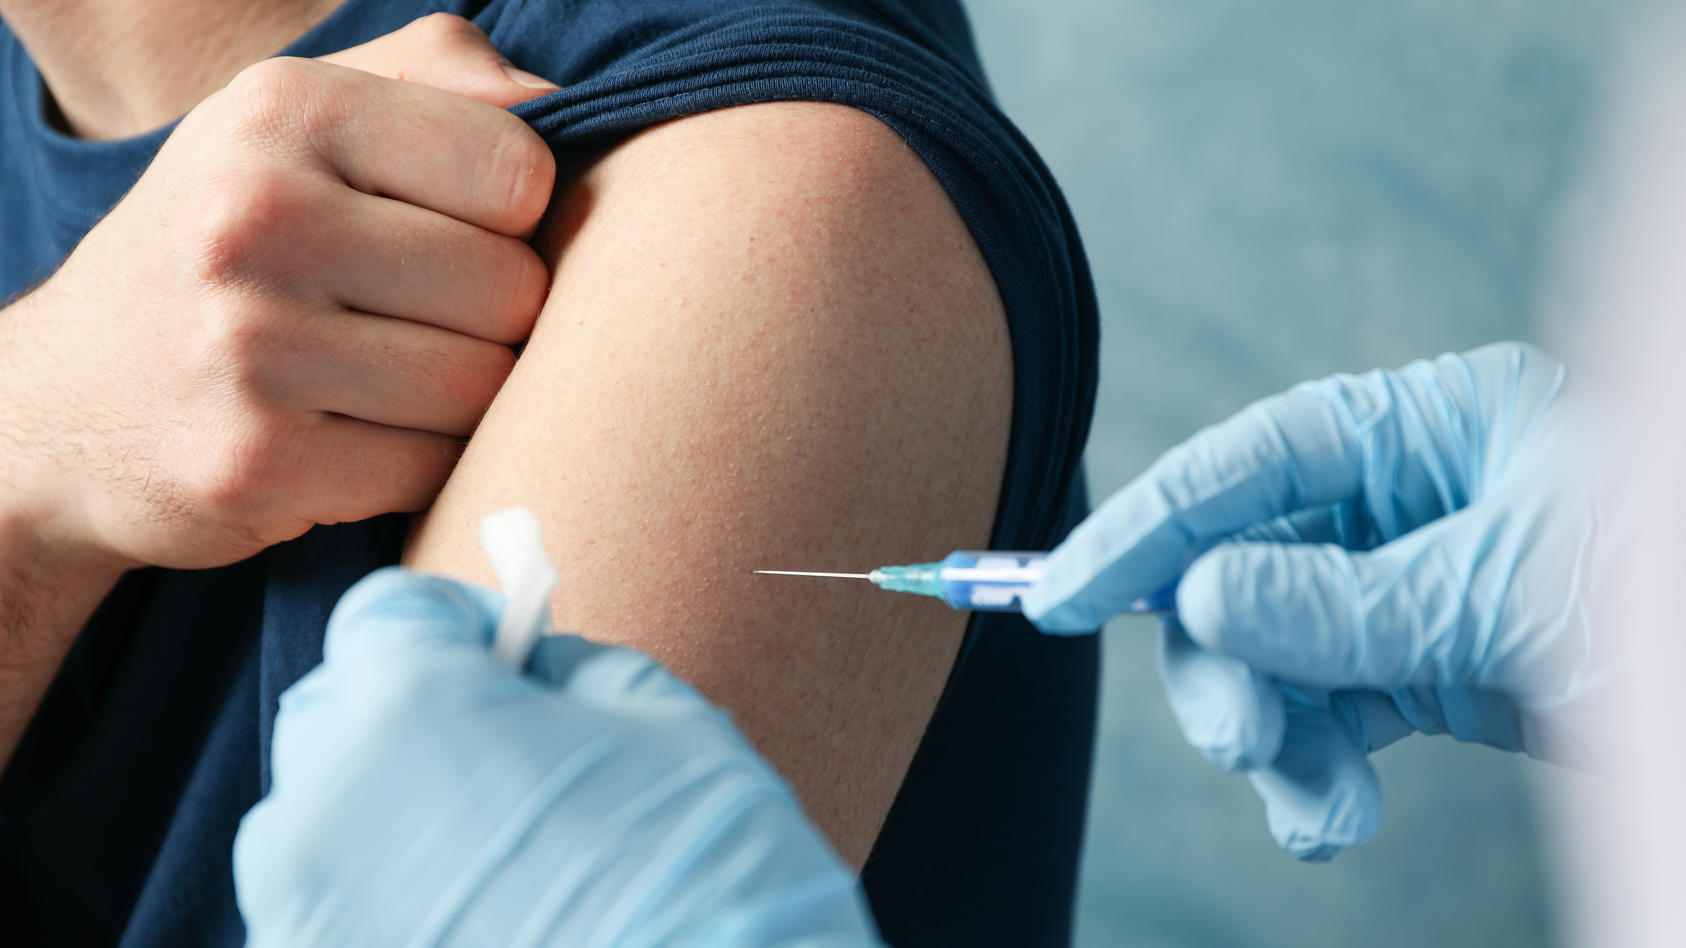 Um gegen verschiedene Infektionskrankheiten geschützt zu sein, gibt es unterschiedliche Arten von Impfstoffen.